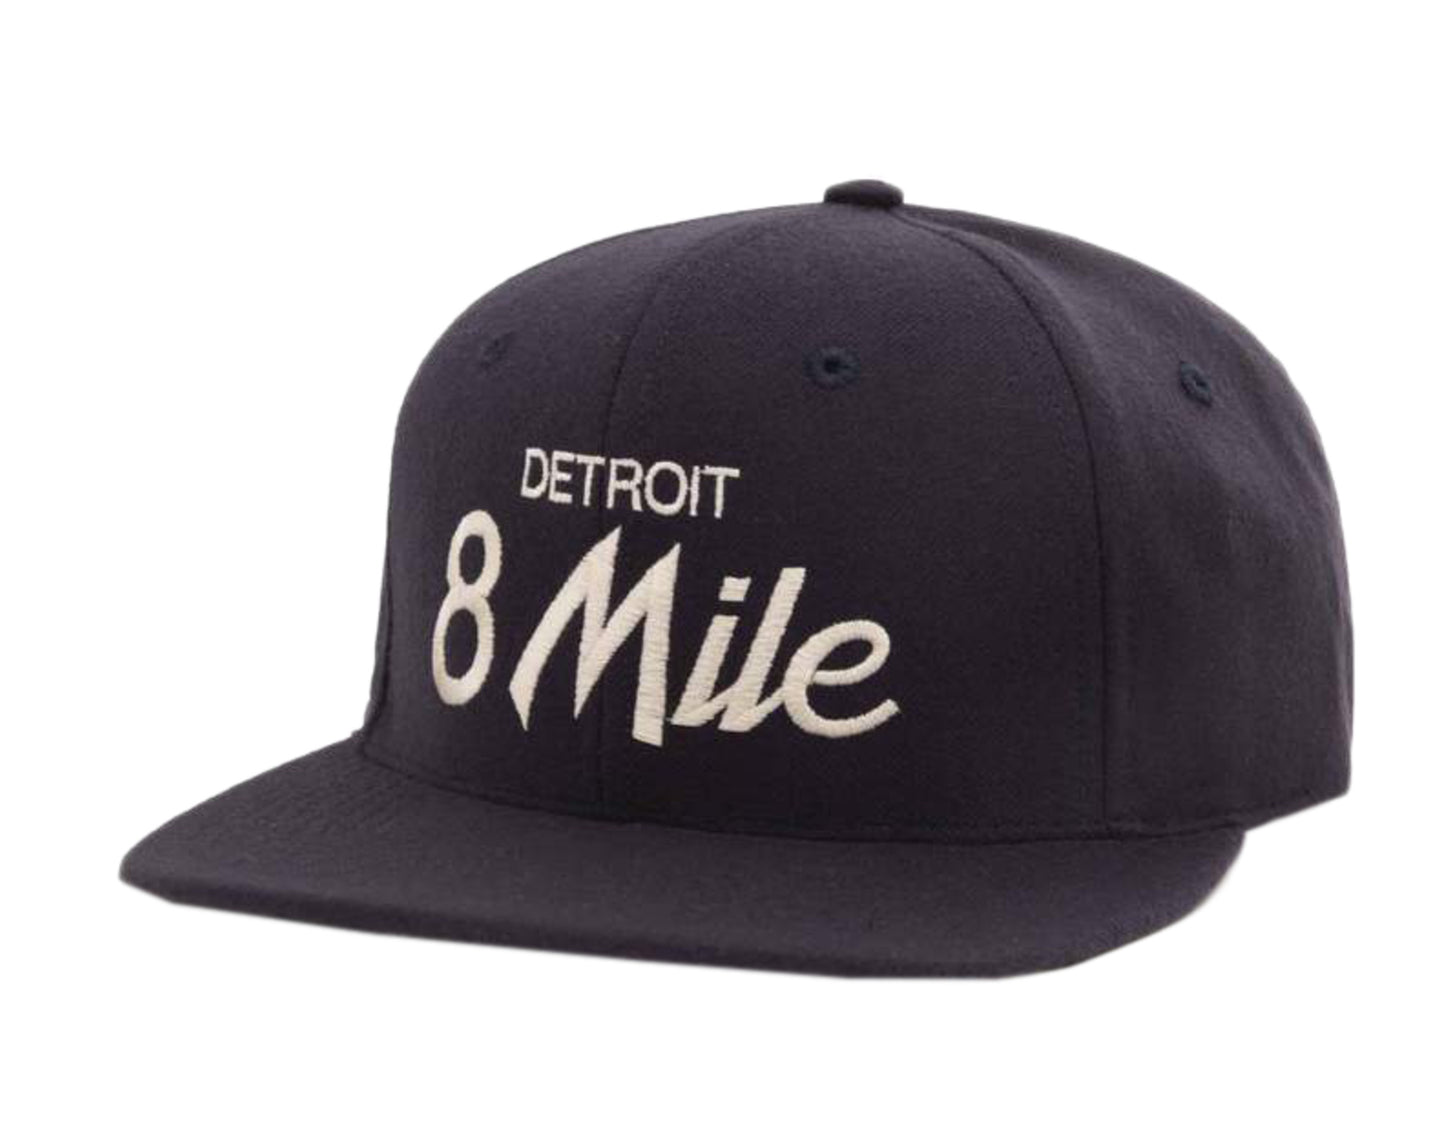 Hood Hat USA 8 Mile Detroit MI Wool Snapback